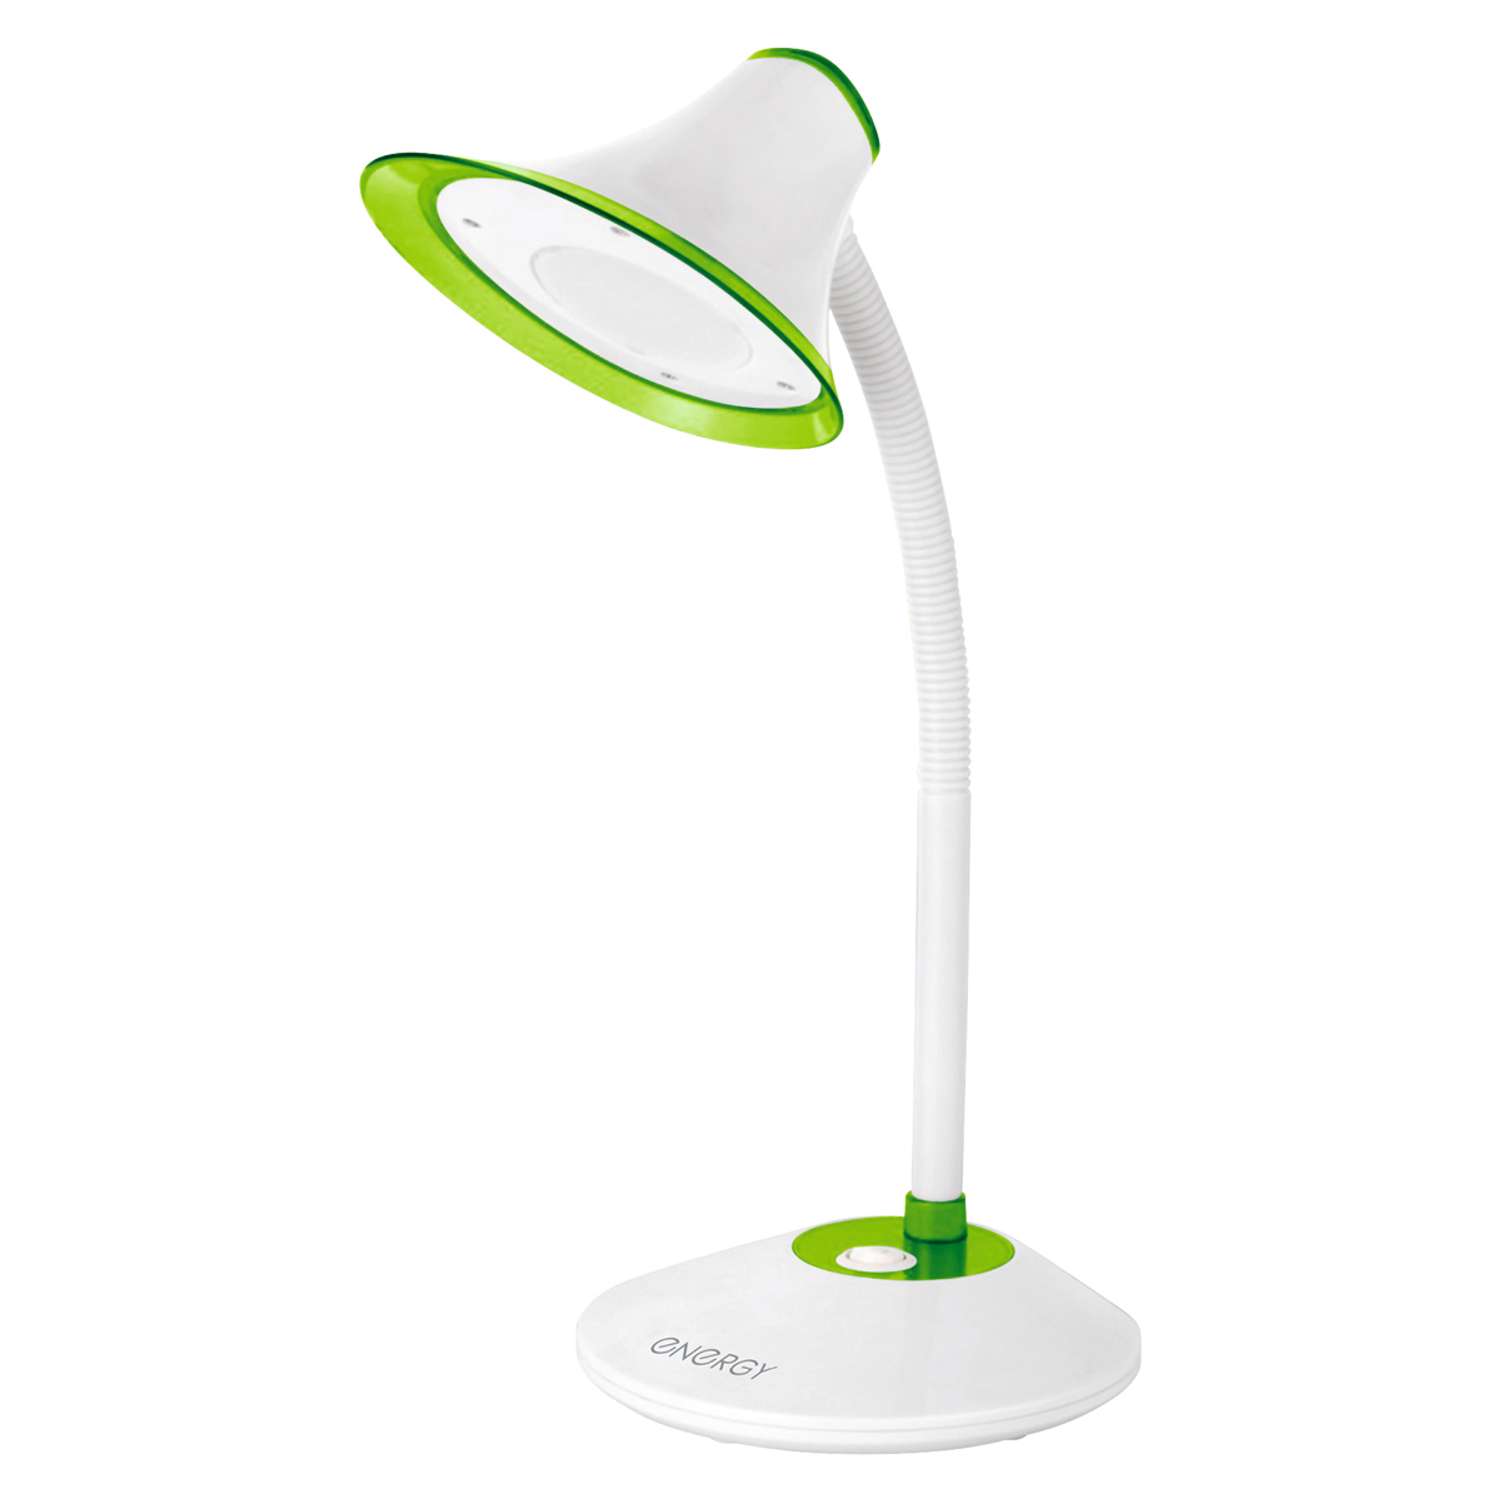 Лампа электрическая Energy настольная EN-LED20-1 бело-зеленая - фото 1